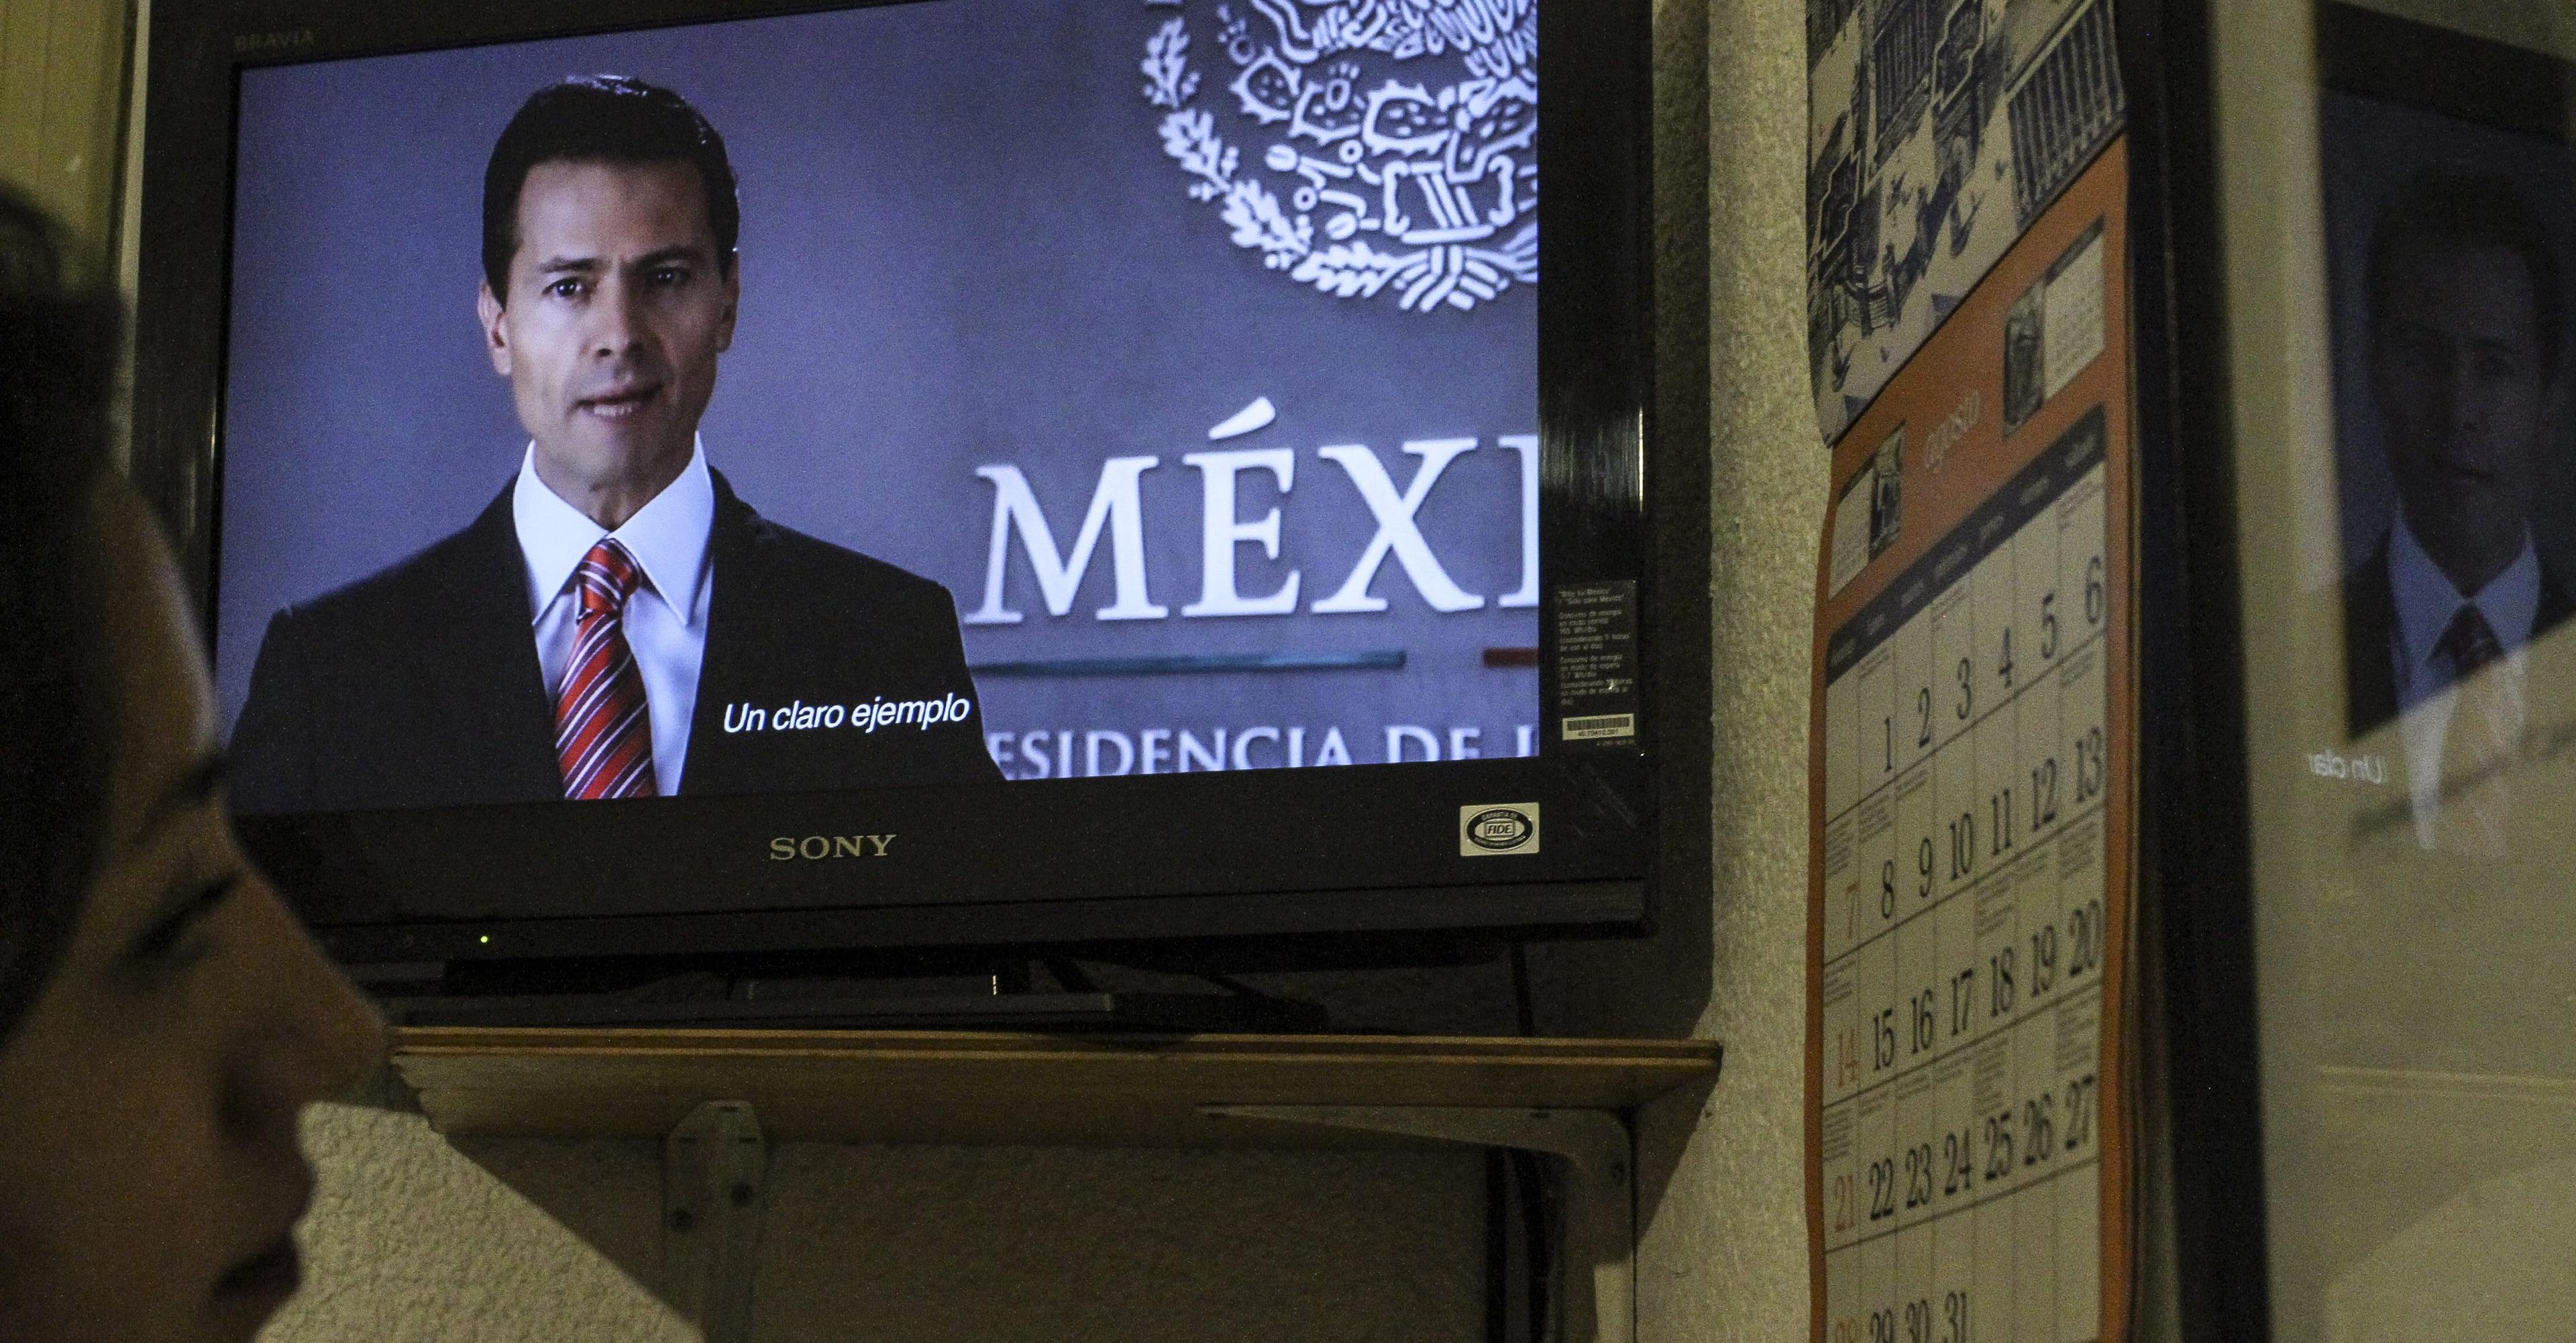 New York Times detalla el control del gobierno mexicano sobre los medios, mediante publicidad oficial